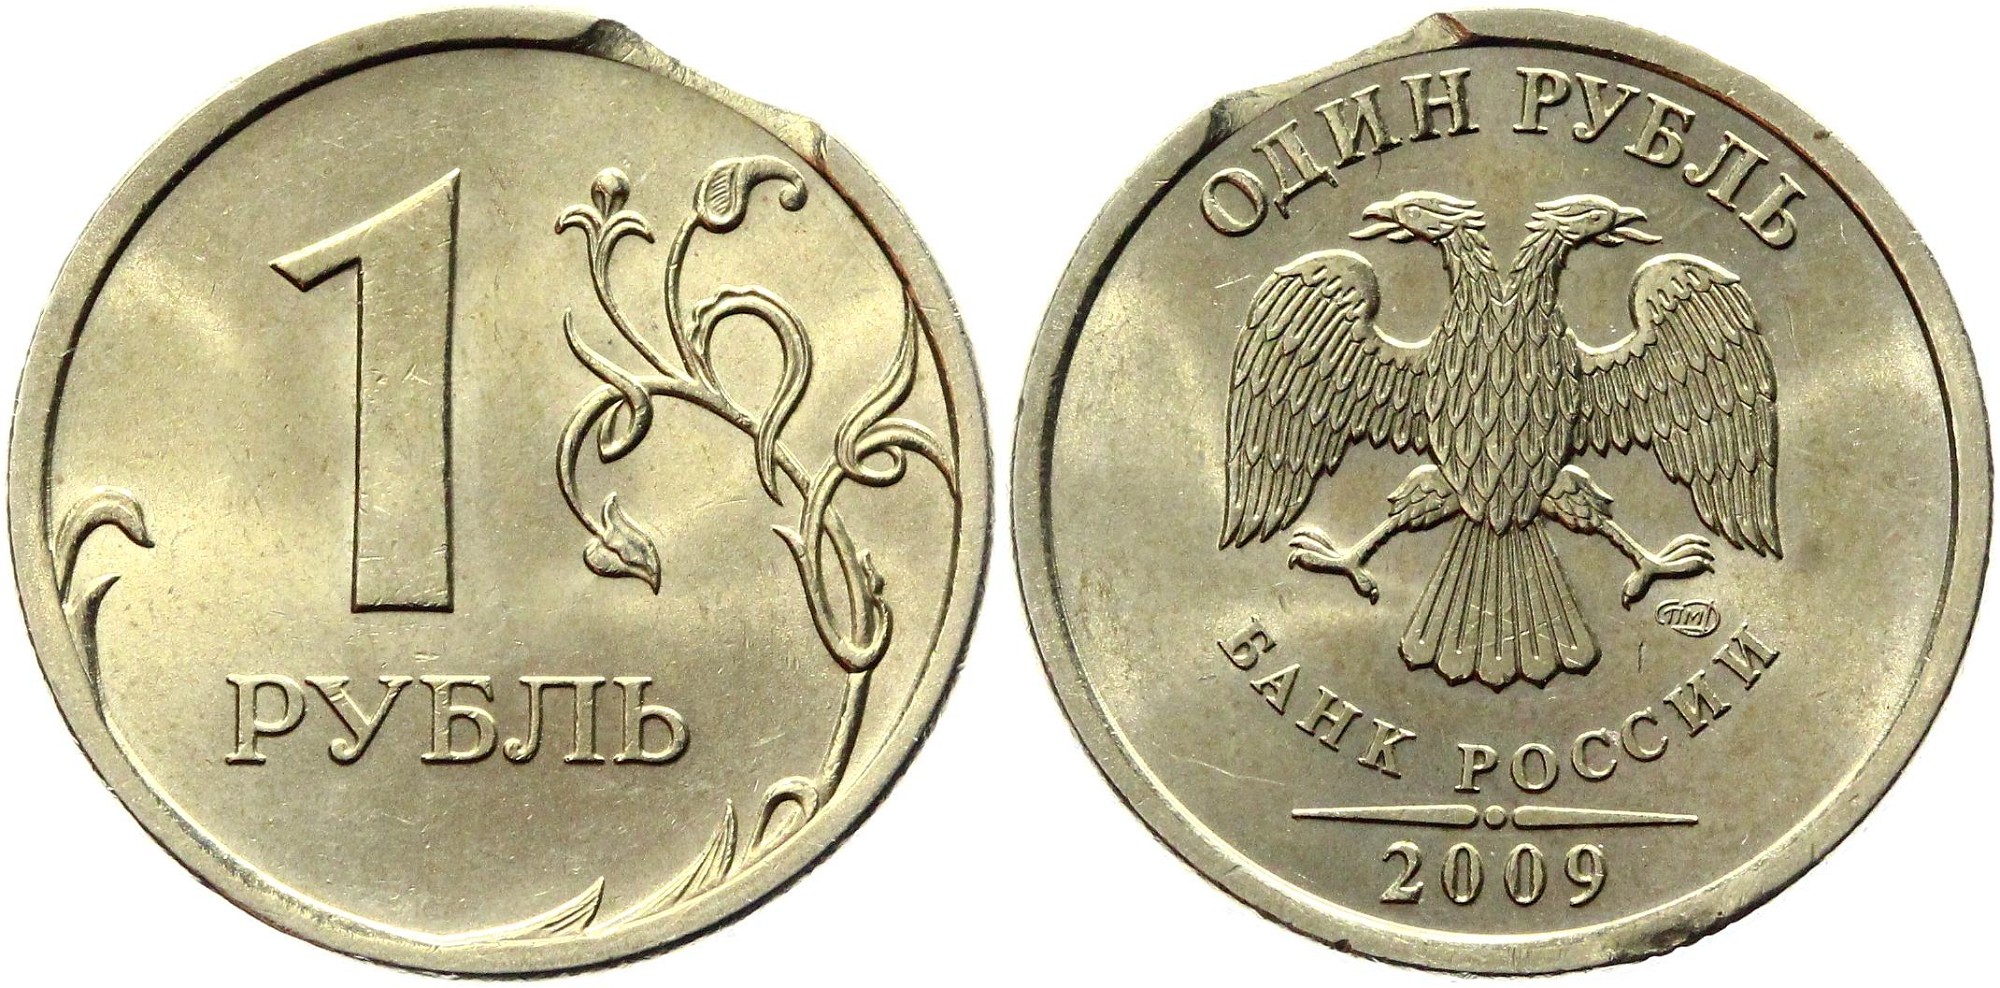 5 рублей немагнитная. 5 Рублей 2009 ММД (магнитная). 5 Рублей 2009 ММД. Монета 2 рубля 2009 немагнитная. 5 Рублей 2009 года немагнитные.